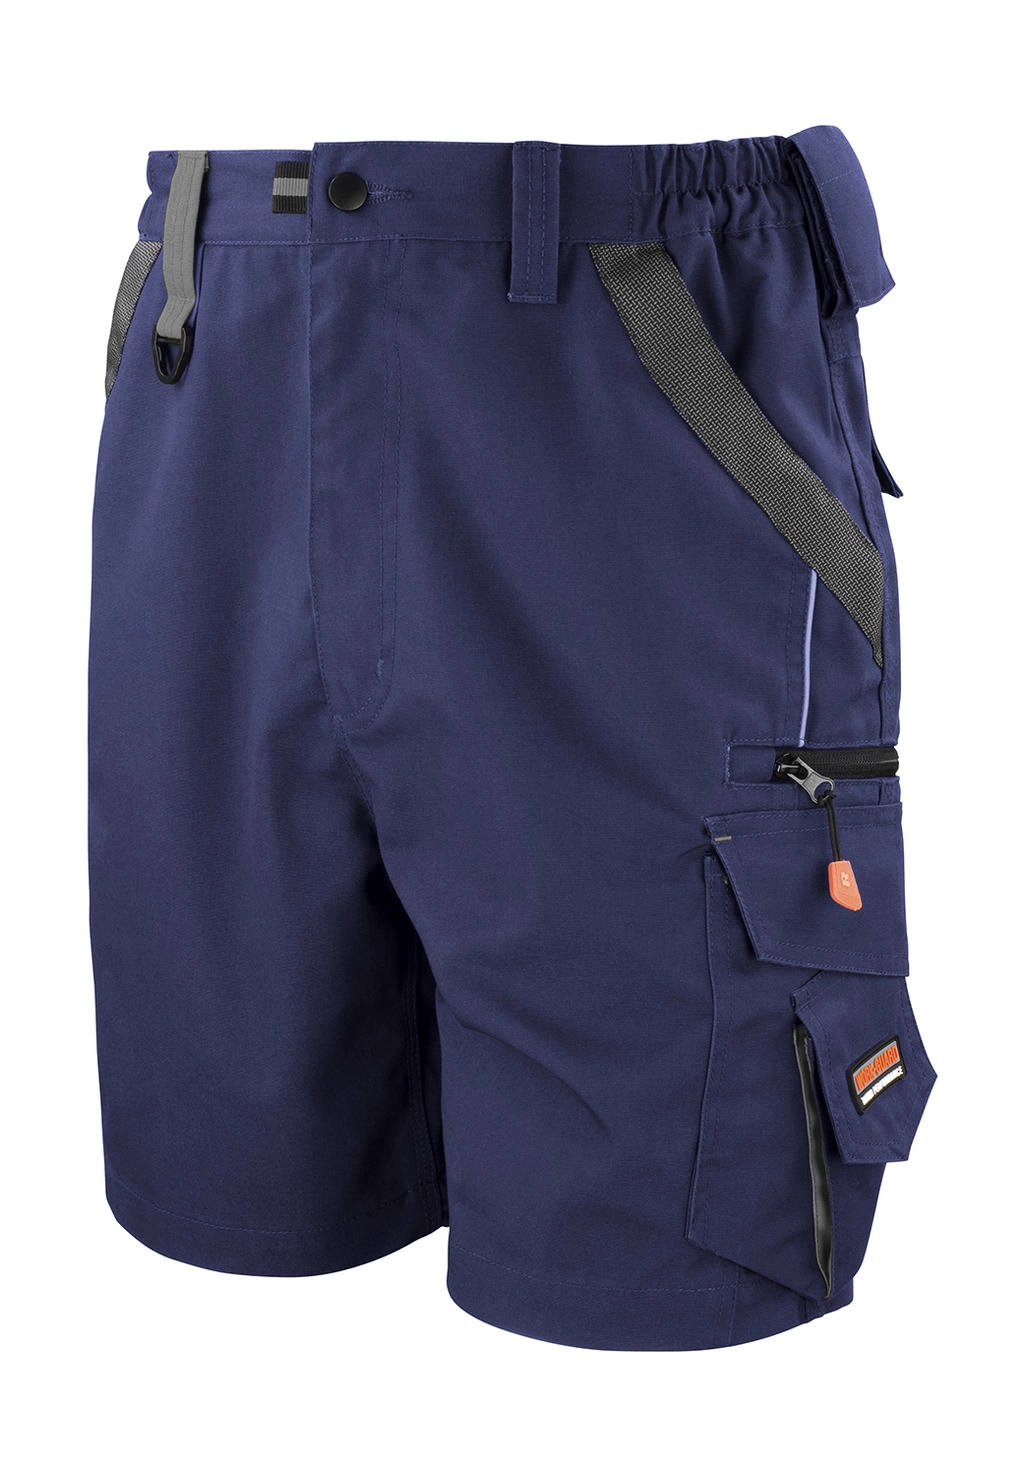 Work-Guard Technical Shorts zum Besticken und Bedrucken in der Farbe Navy/Black mit Ihren Logo, Schriftzug oder Motiv.